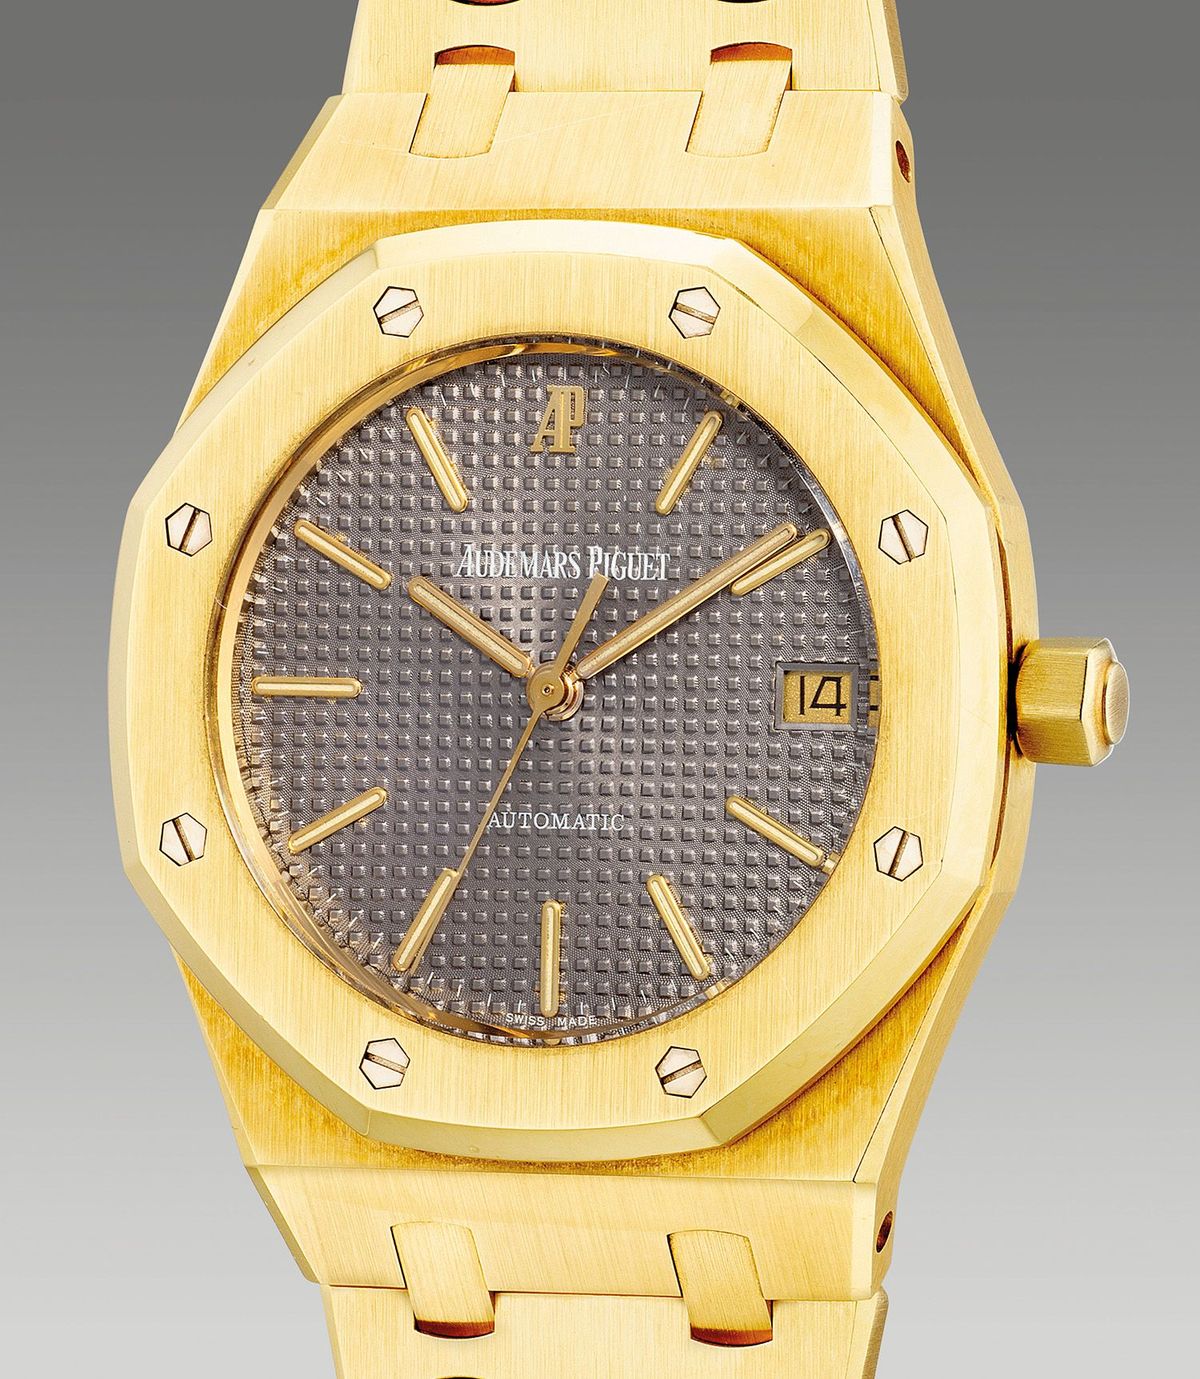 yellow gold wristwatch circa 1996 by Audemars Piguet